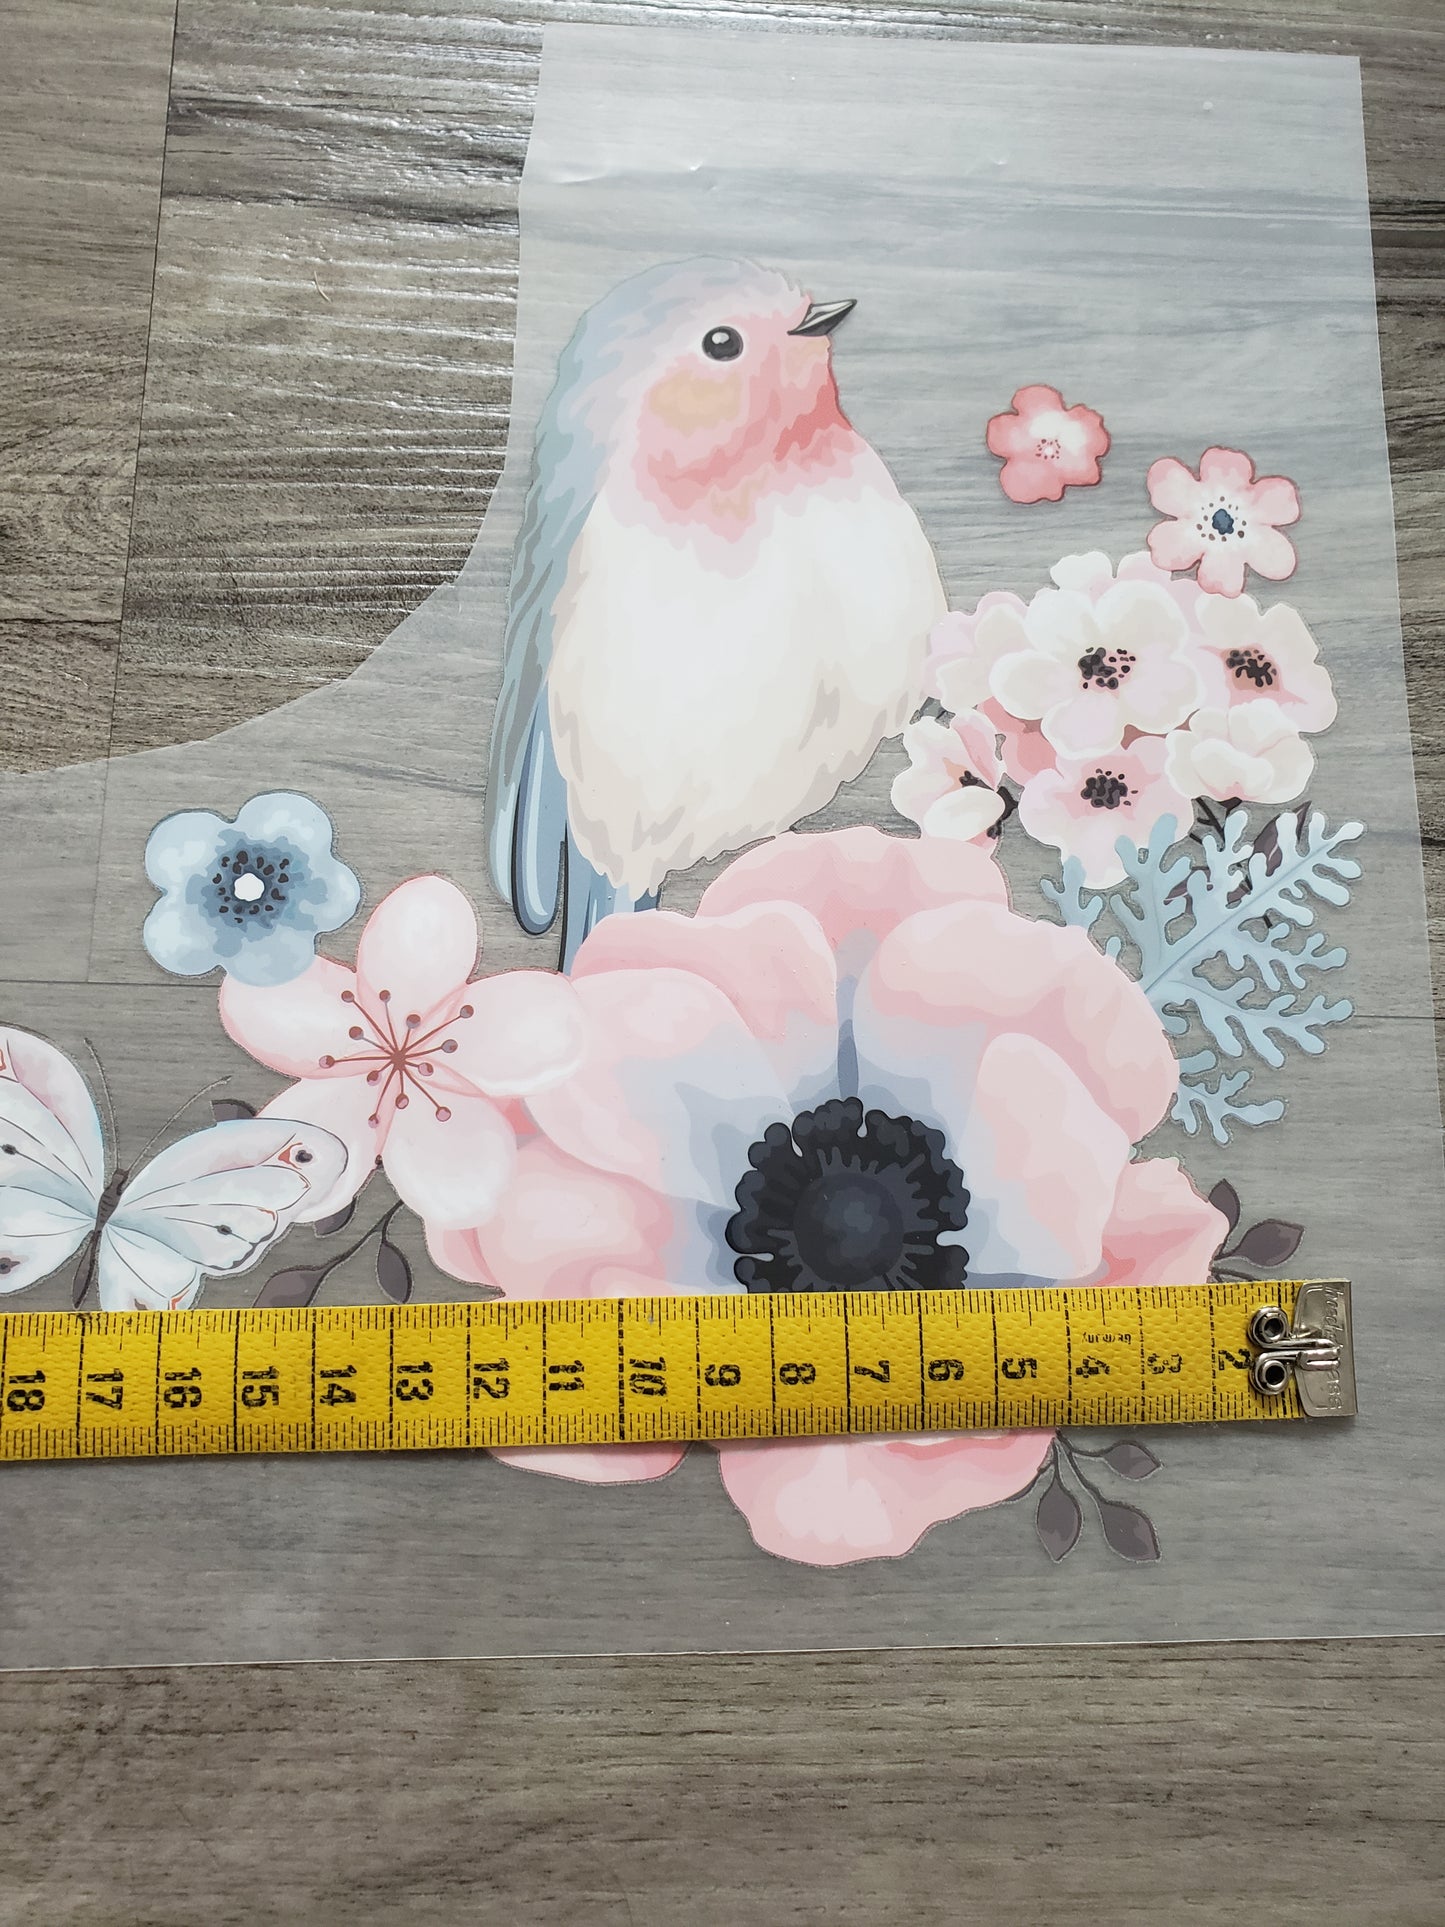 XL Bügelbild Vogel und Blume, nicht selbstgezeichnet! Kann gewerblich genutzt werden